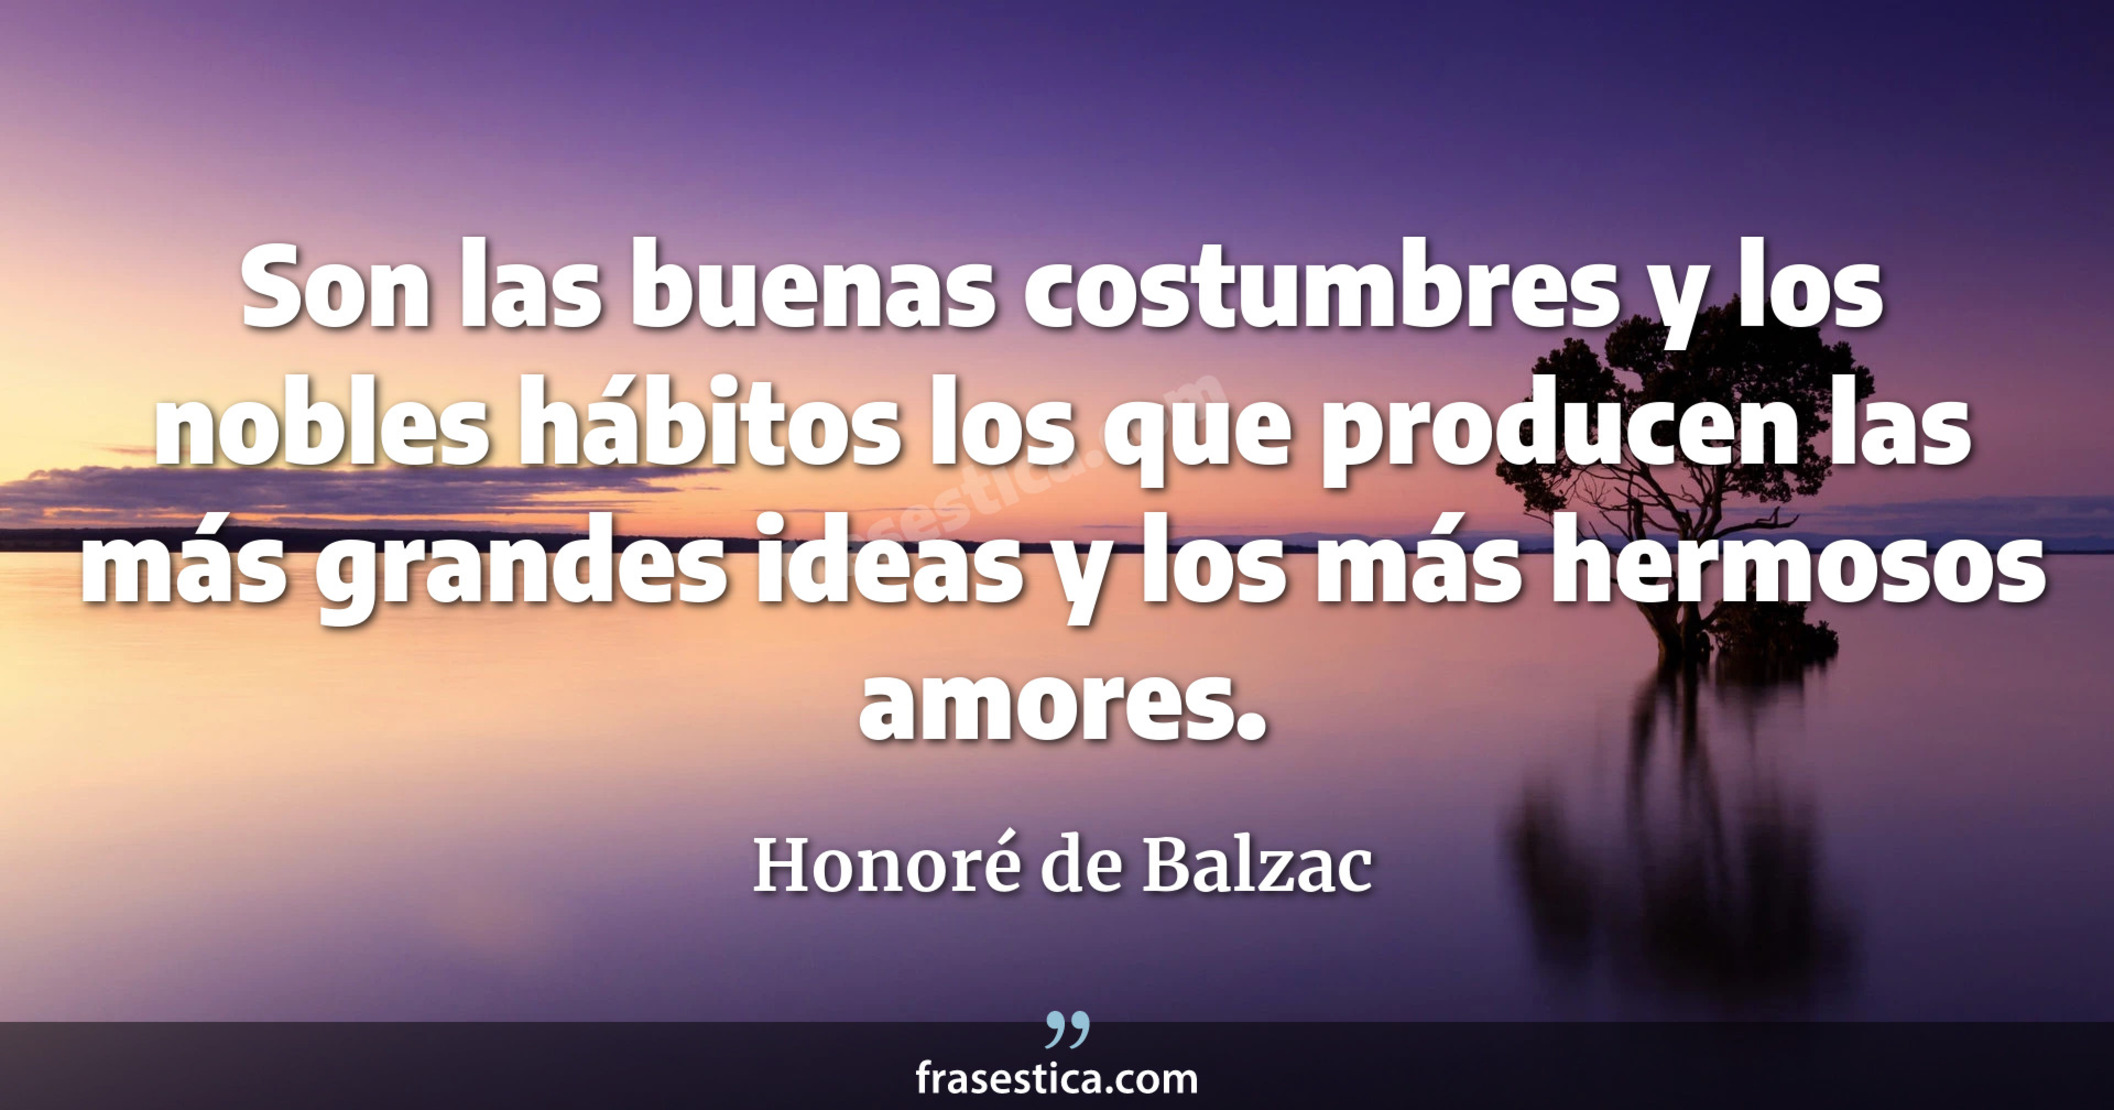 Son las buenas costumbres y los nobles hábitos los que producen las más grandes ideas y los más hermosos amores. - Honoré de Balzac